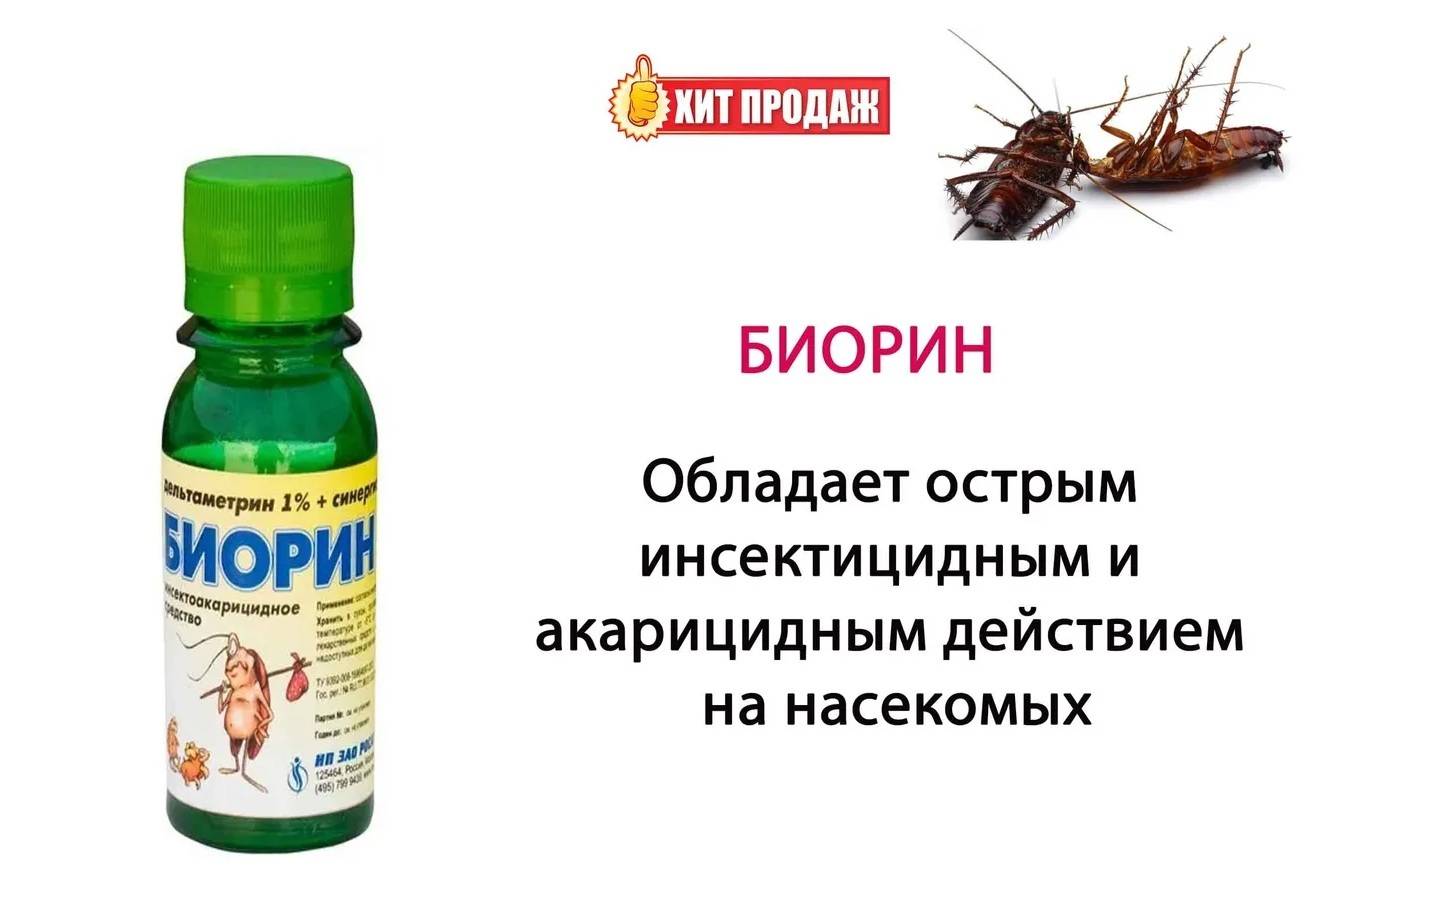 Инсектицид регент 800 – инструкция по применению, отзывы об эффективности препарата против насекомых